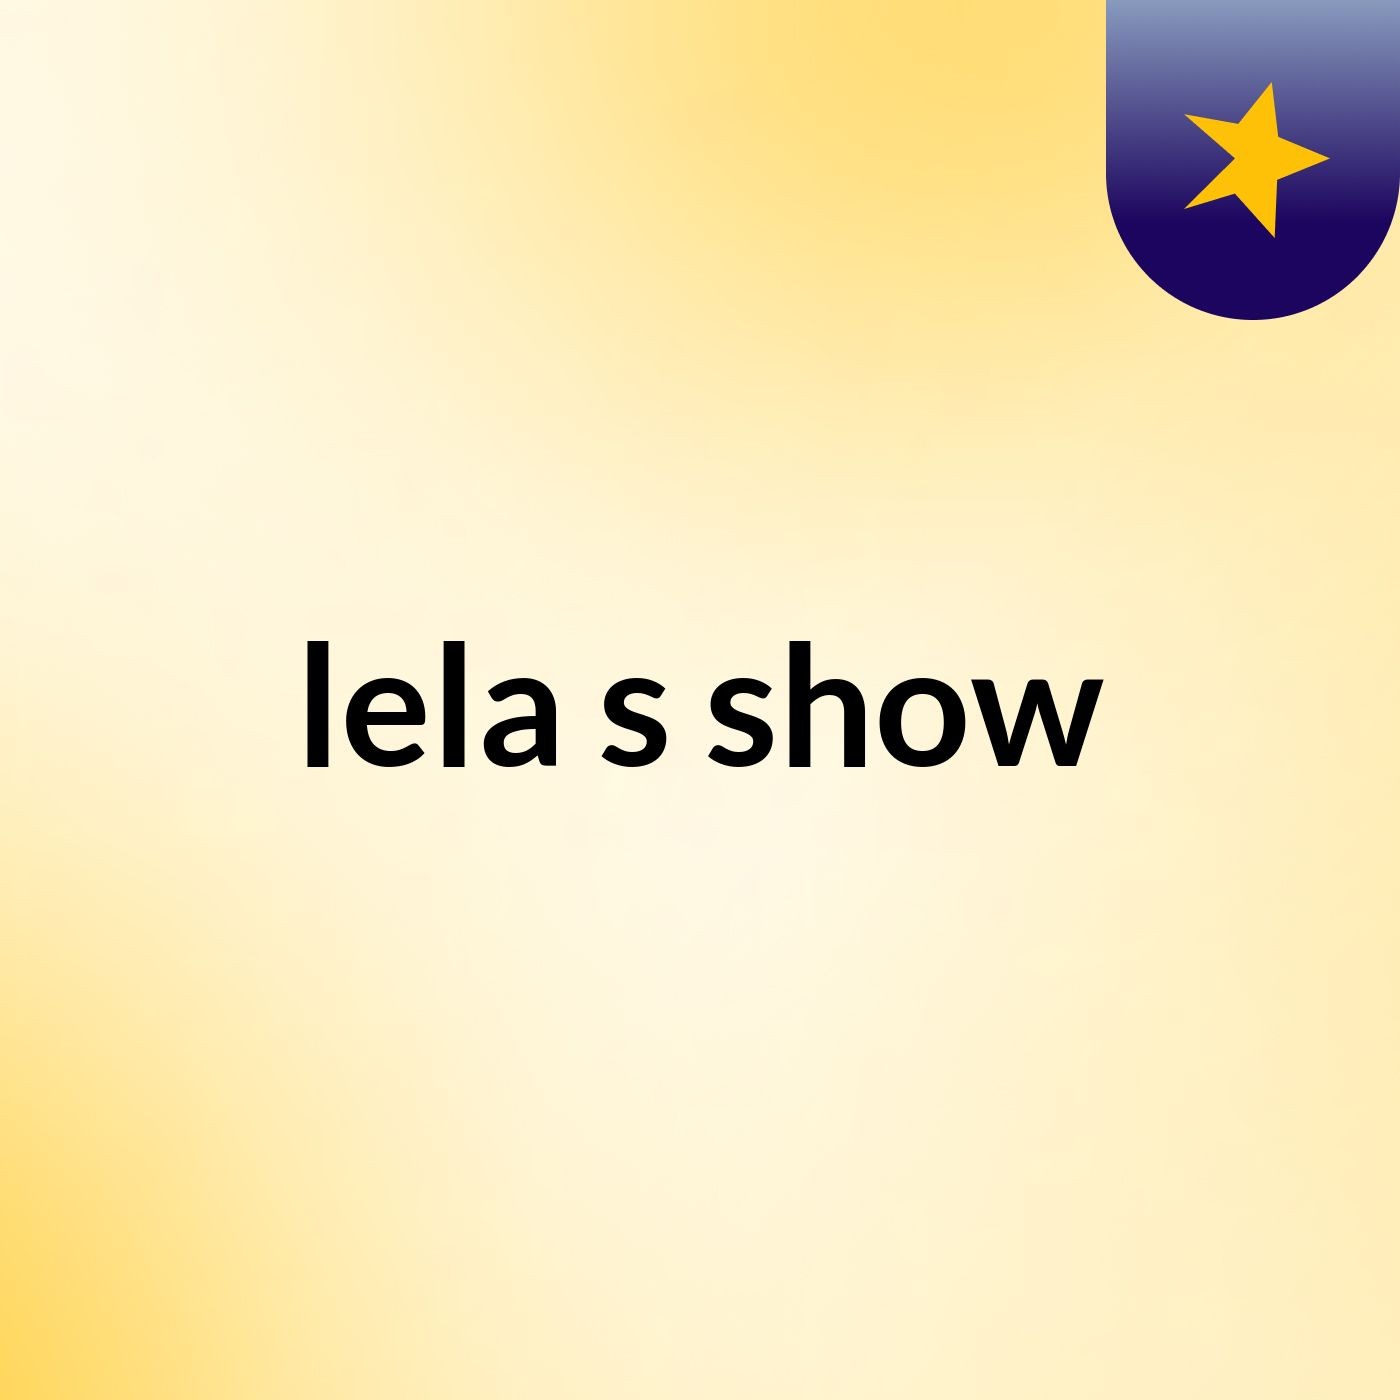 lela's show